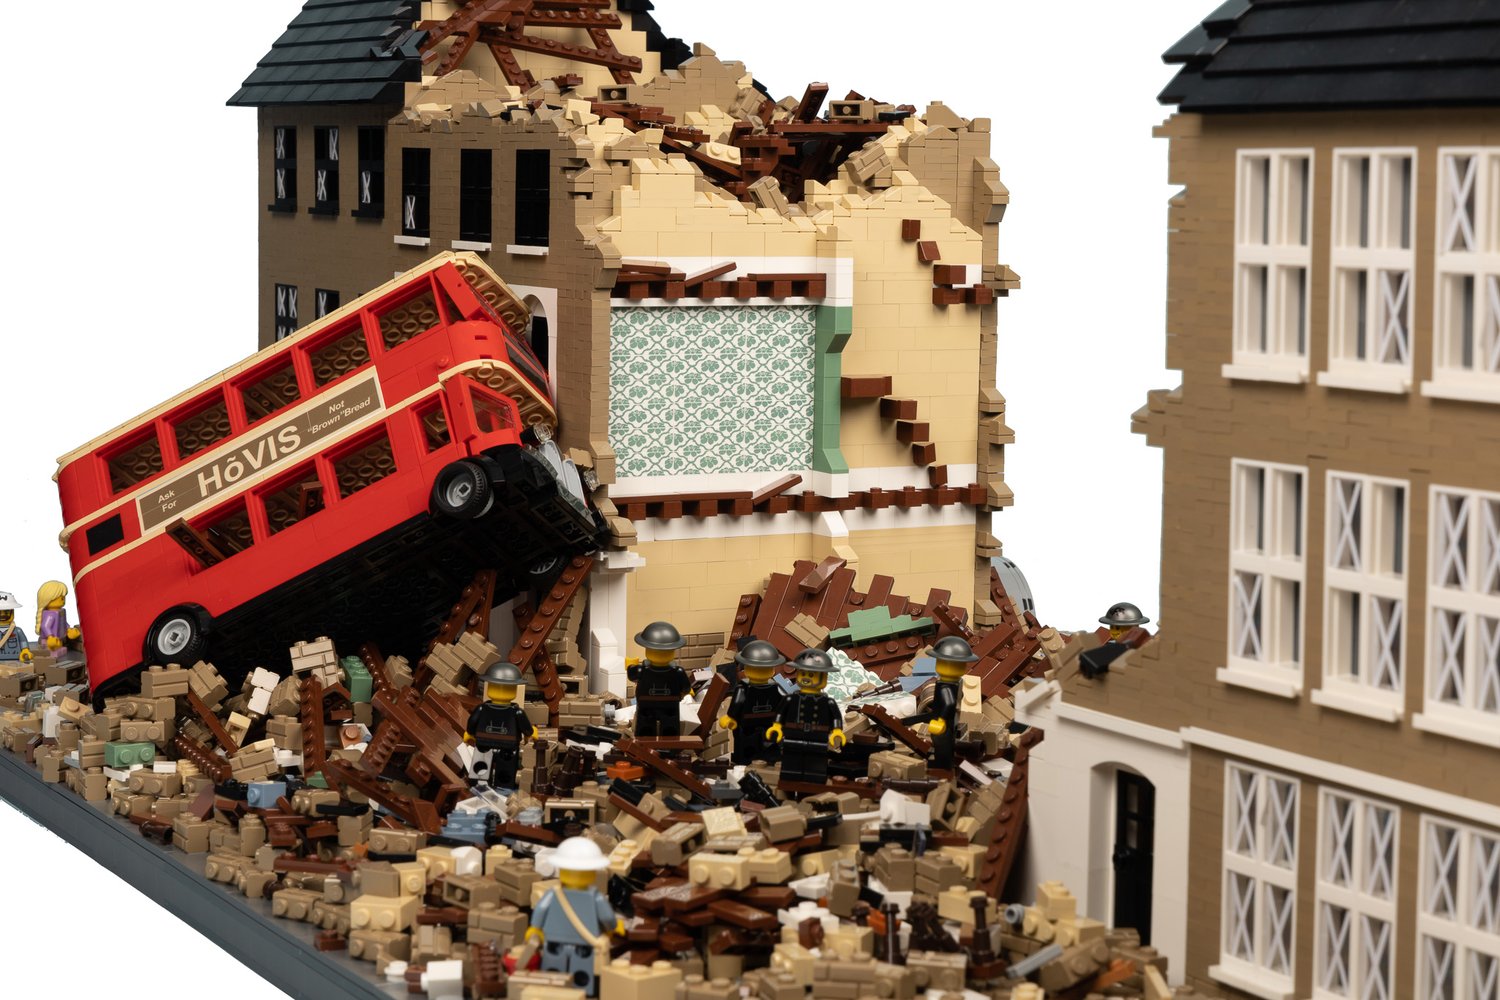 LEGO and other bricks Custom WW2 Fans